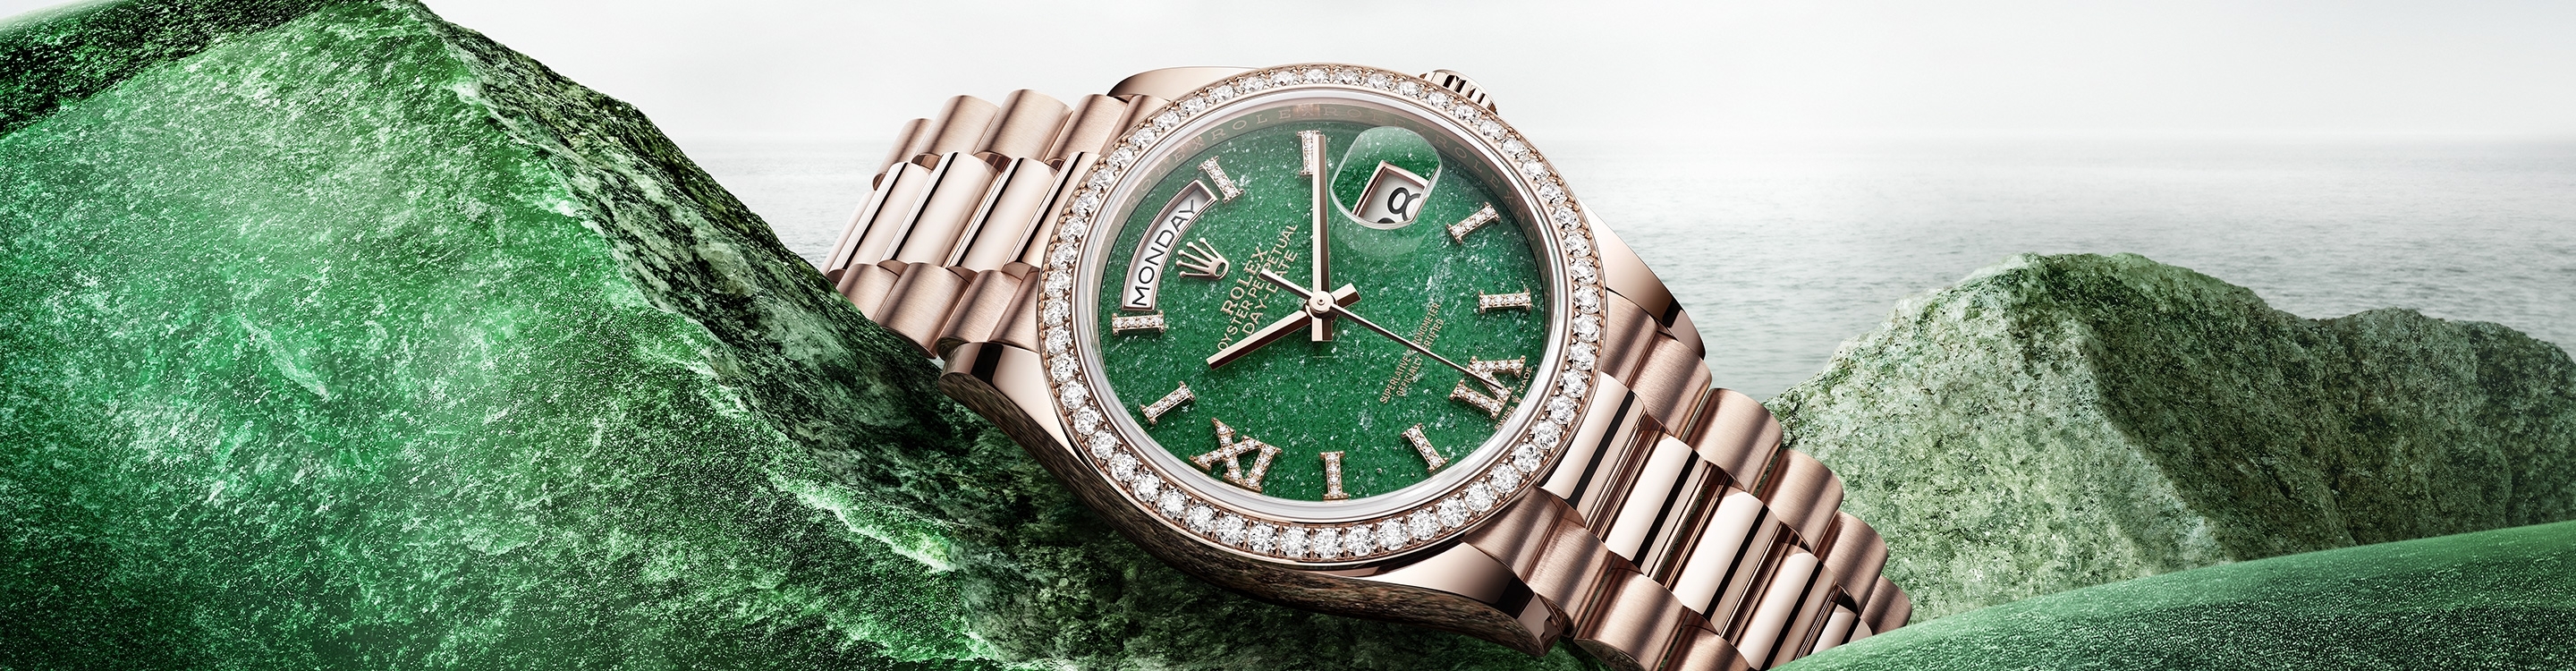 Rolex Day-Date腕錶金款，M128238-0008 | 歐洲坊